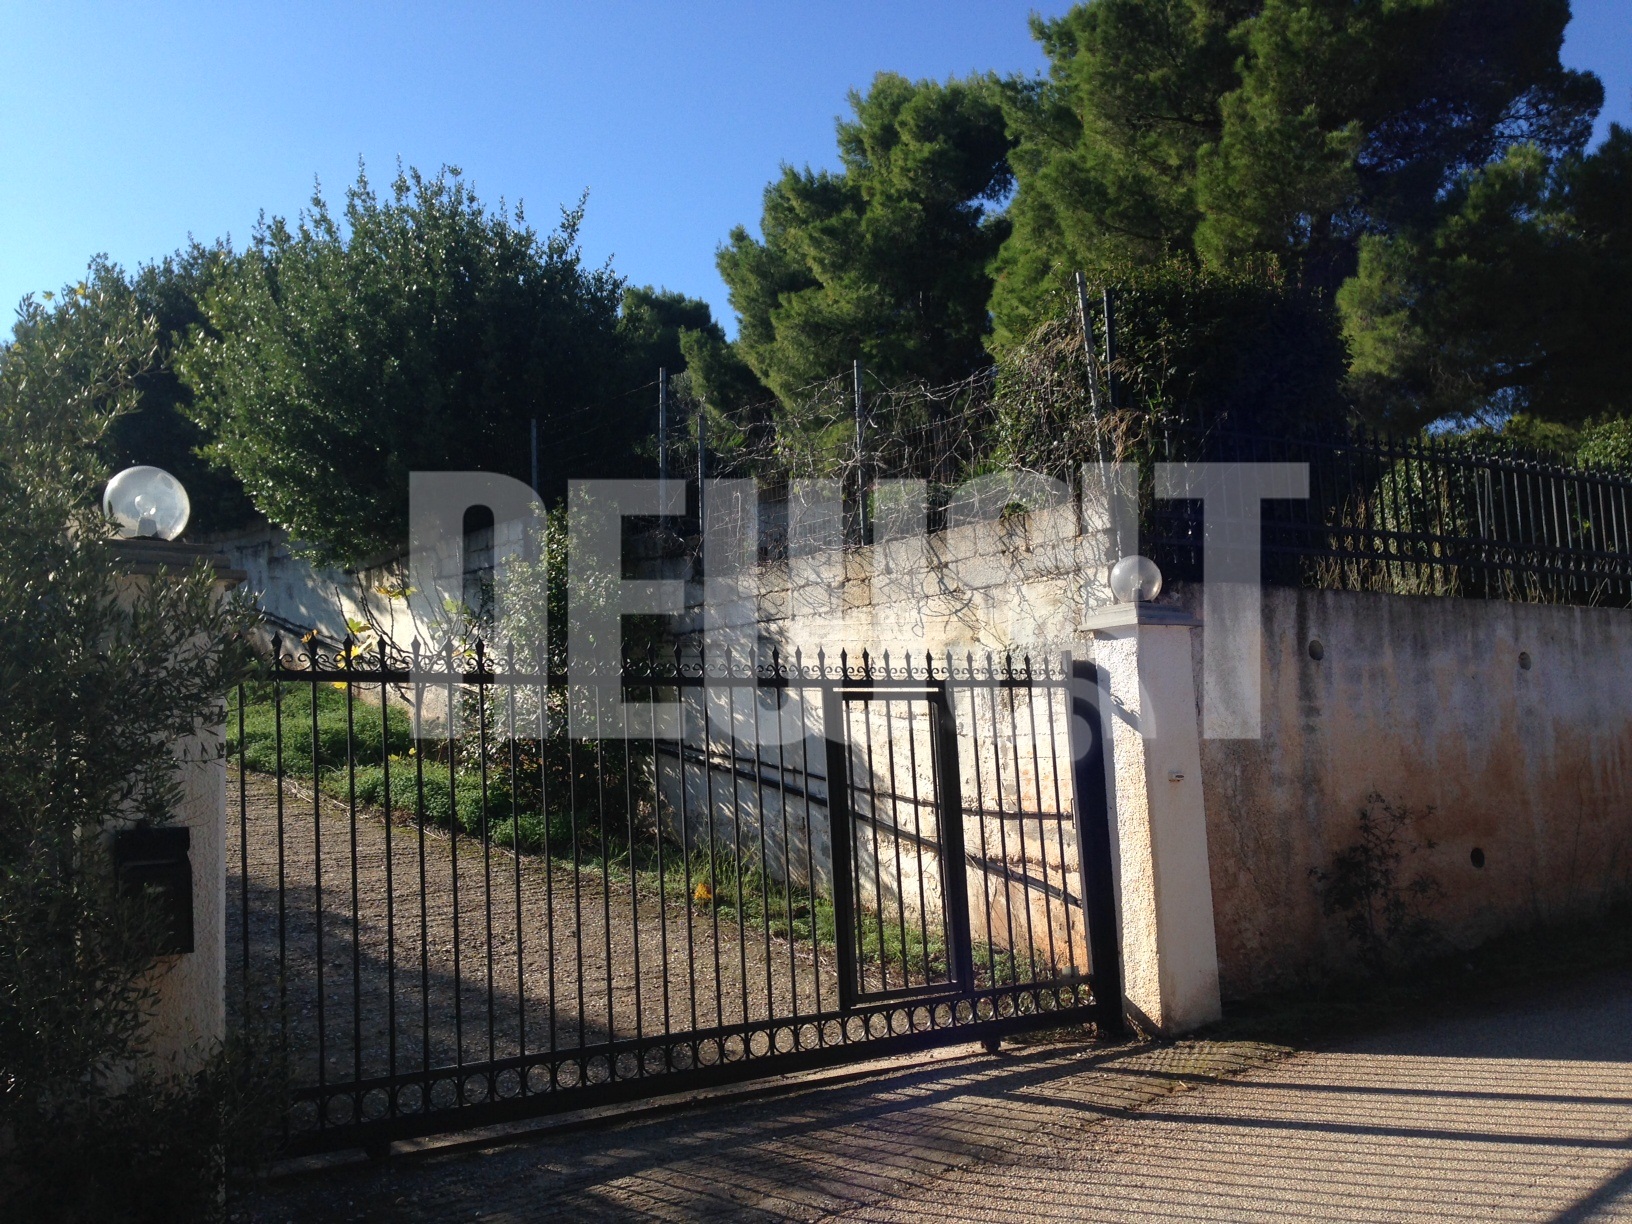 Το σπίτι του βουλευτή Γερμενή στη Ραφήνα που ερευνάται από την Αντιτρομοκρατική - ΦΩΤΟ NEWSIT